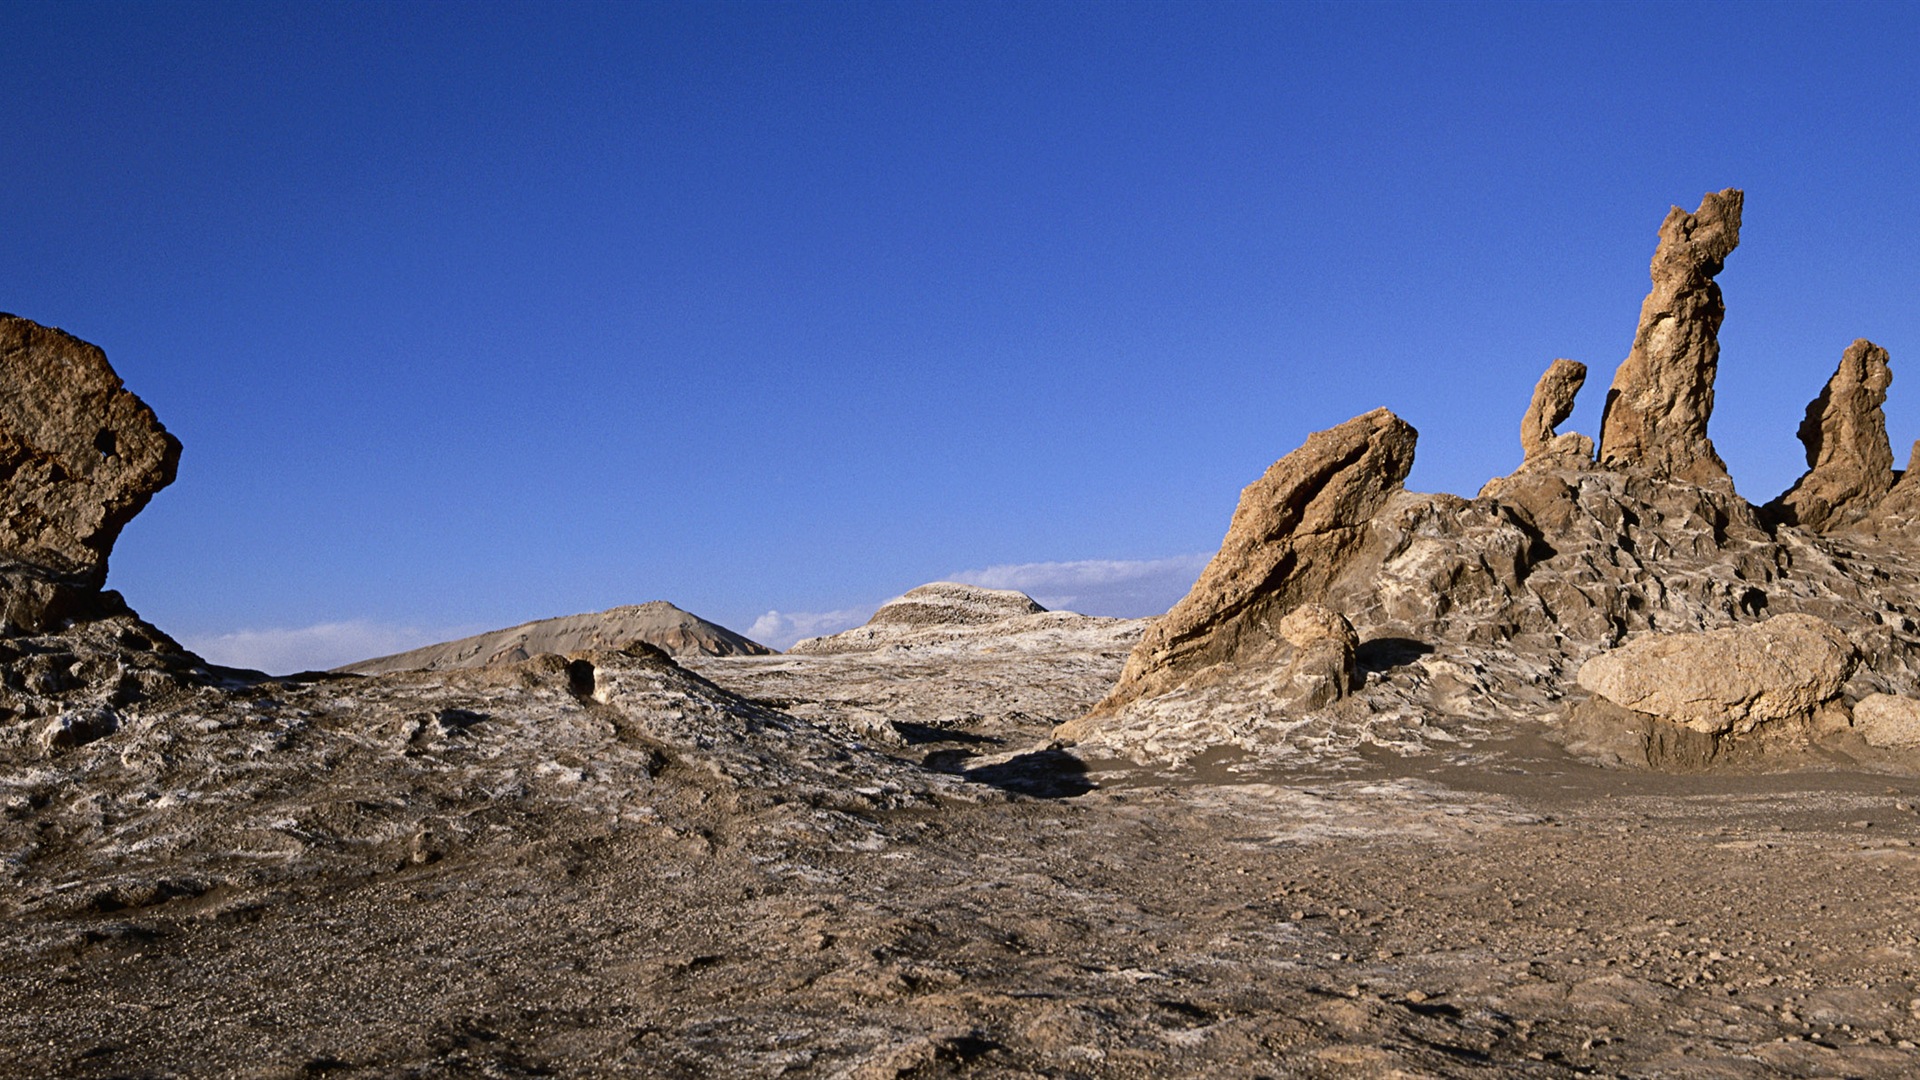 Les déserts chauds et arides, de Windows 8 fonds d'écran widescreen panoramique #11 - 1920x1080